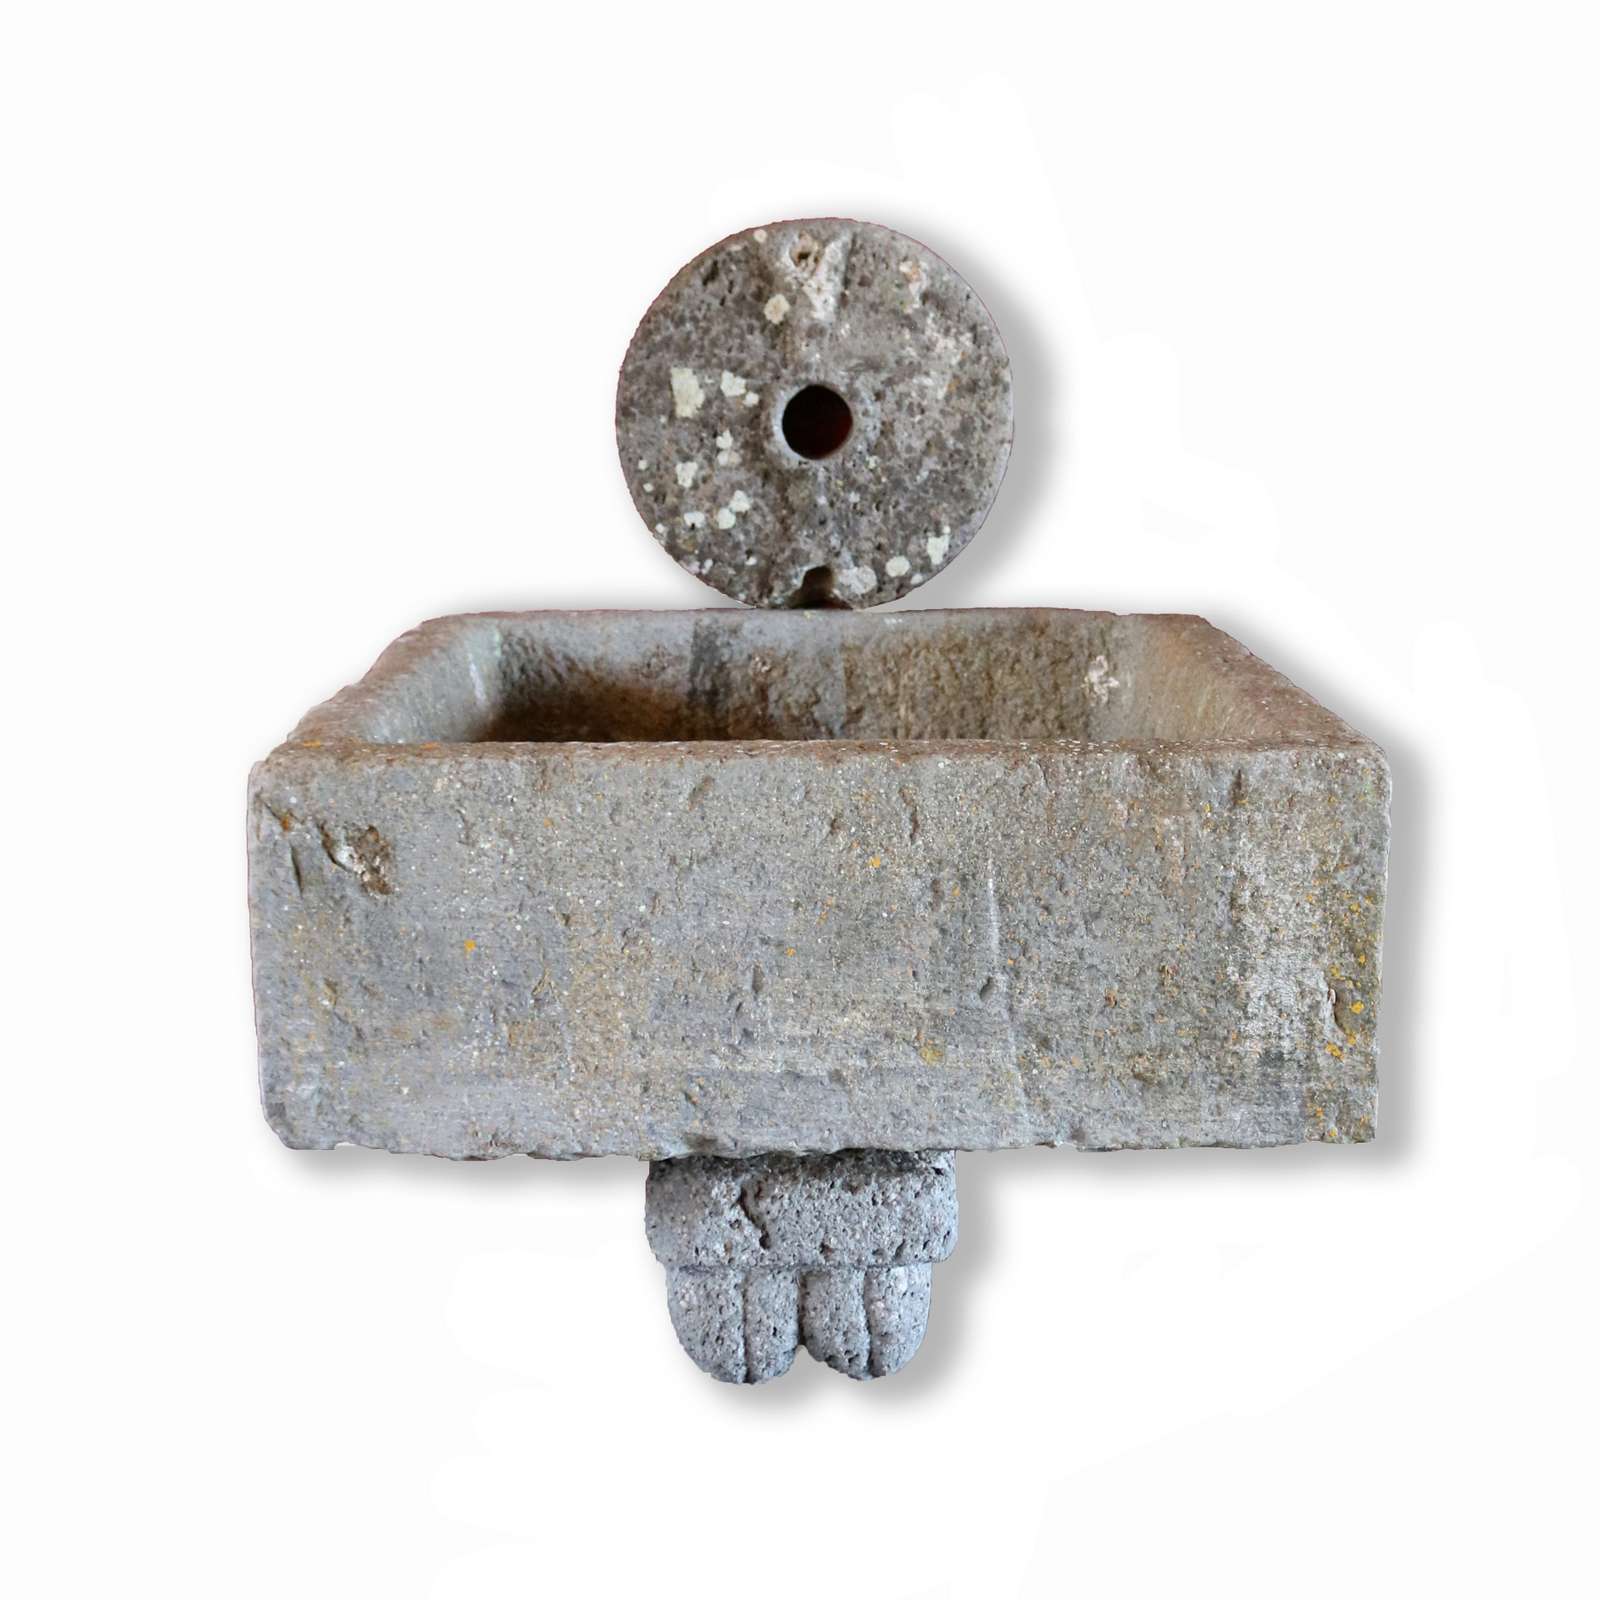 Antica fontana in pietra. Epoca 1800. - Fontane Antiche - Arredo Giardino - Prodotti - Antichità Fiorillo